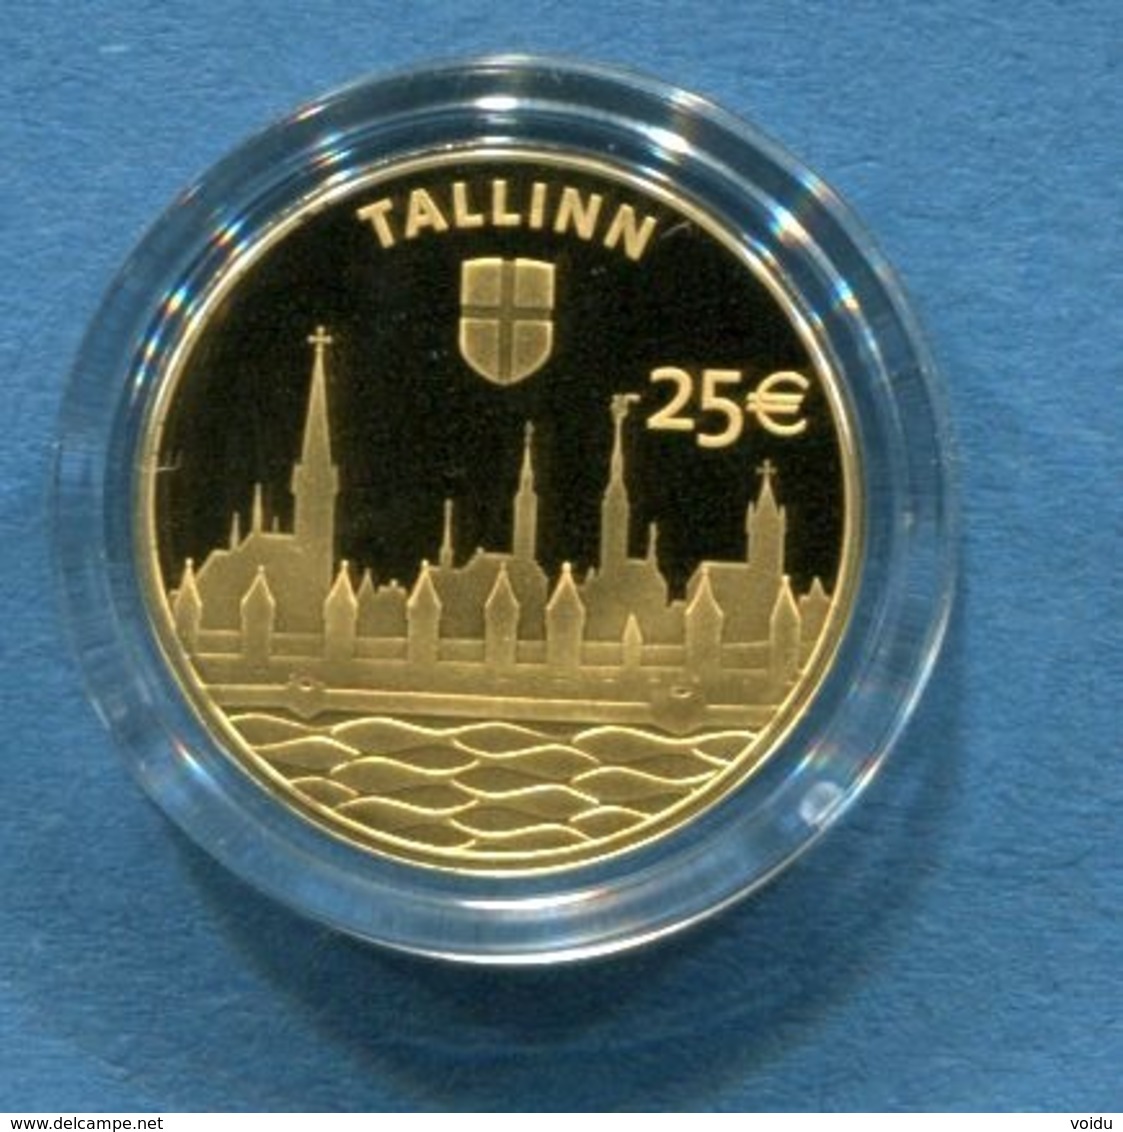 ESTONIA 25 &euro; Euro GOLD COLLECTOR COIN 2017 - Hanseatic Tallinn - Estonia